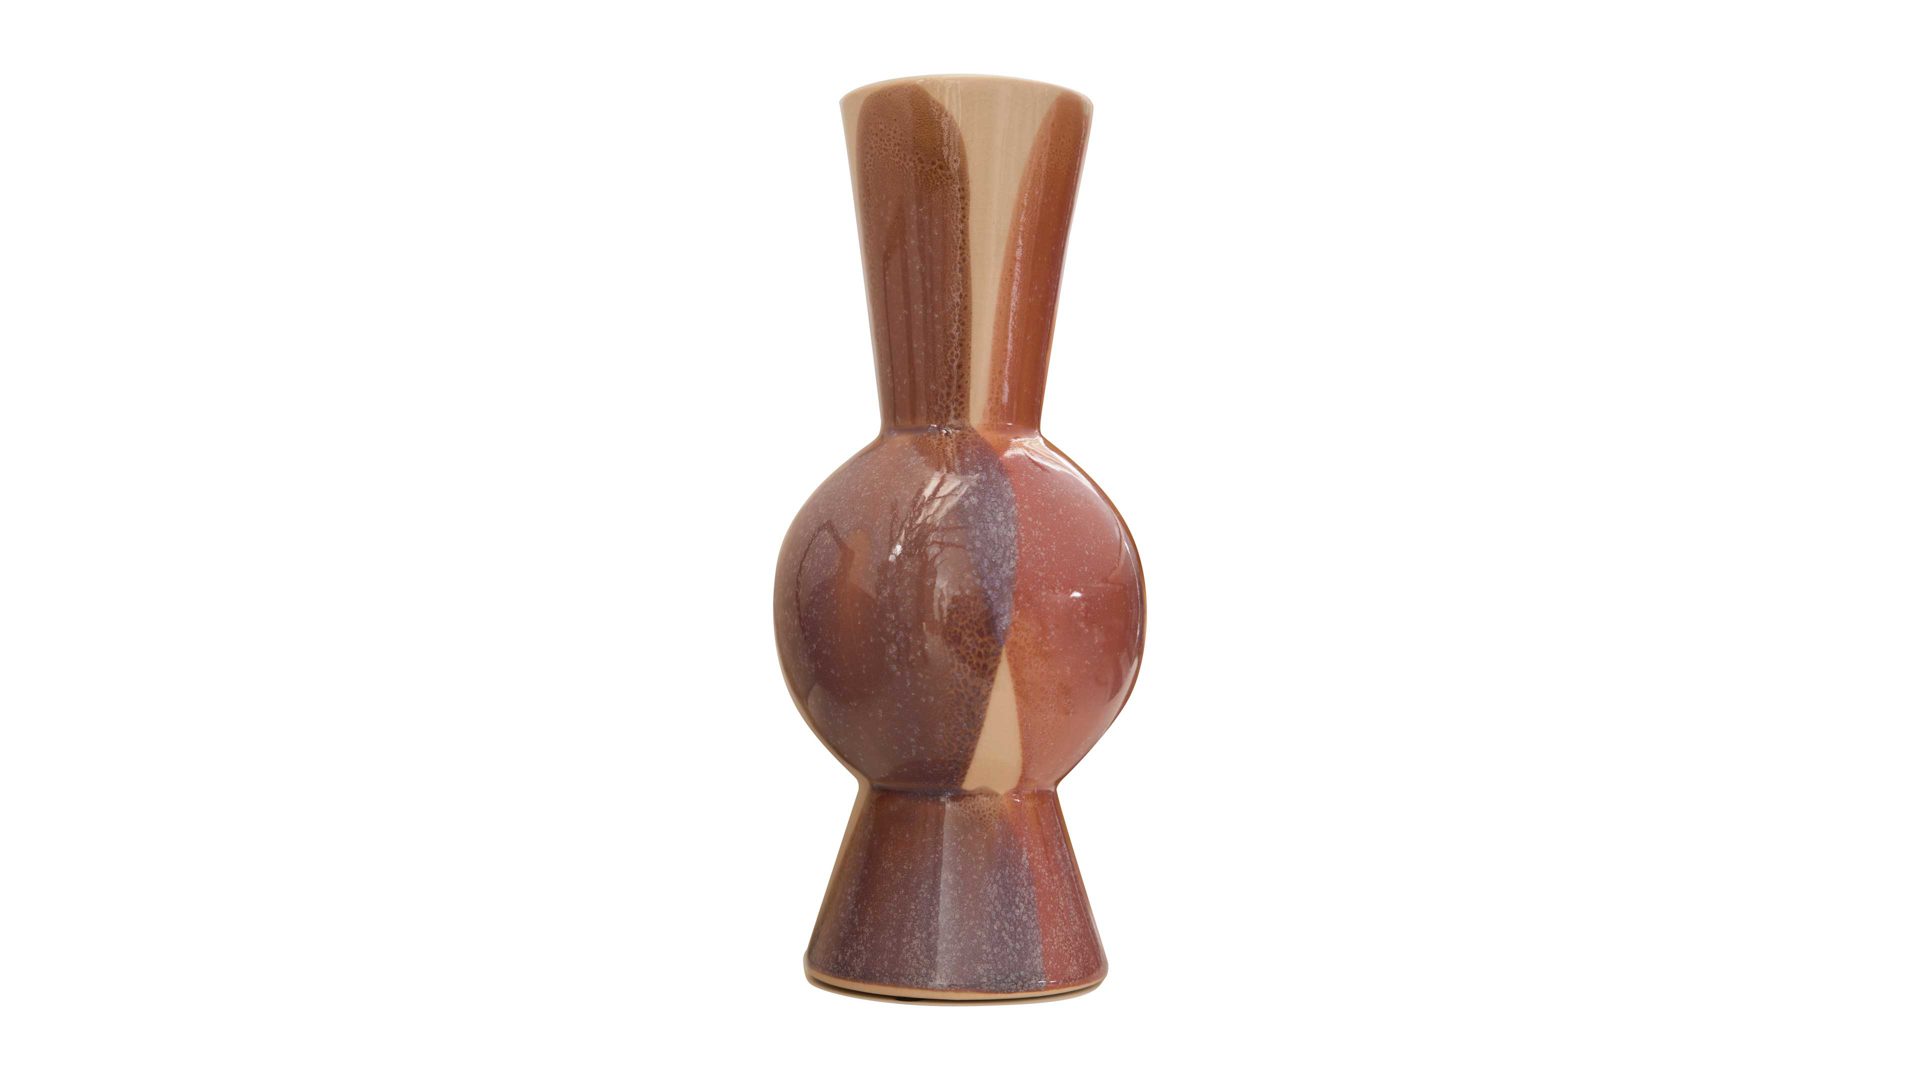 Vase Interliving BEST BUDDYS! aus Keramik in Mehrfarbig Interliving BEST BUDDYS! Vase Multicolor - Höhe ca. 23 cm